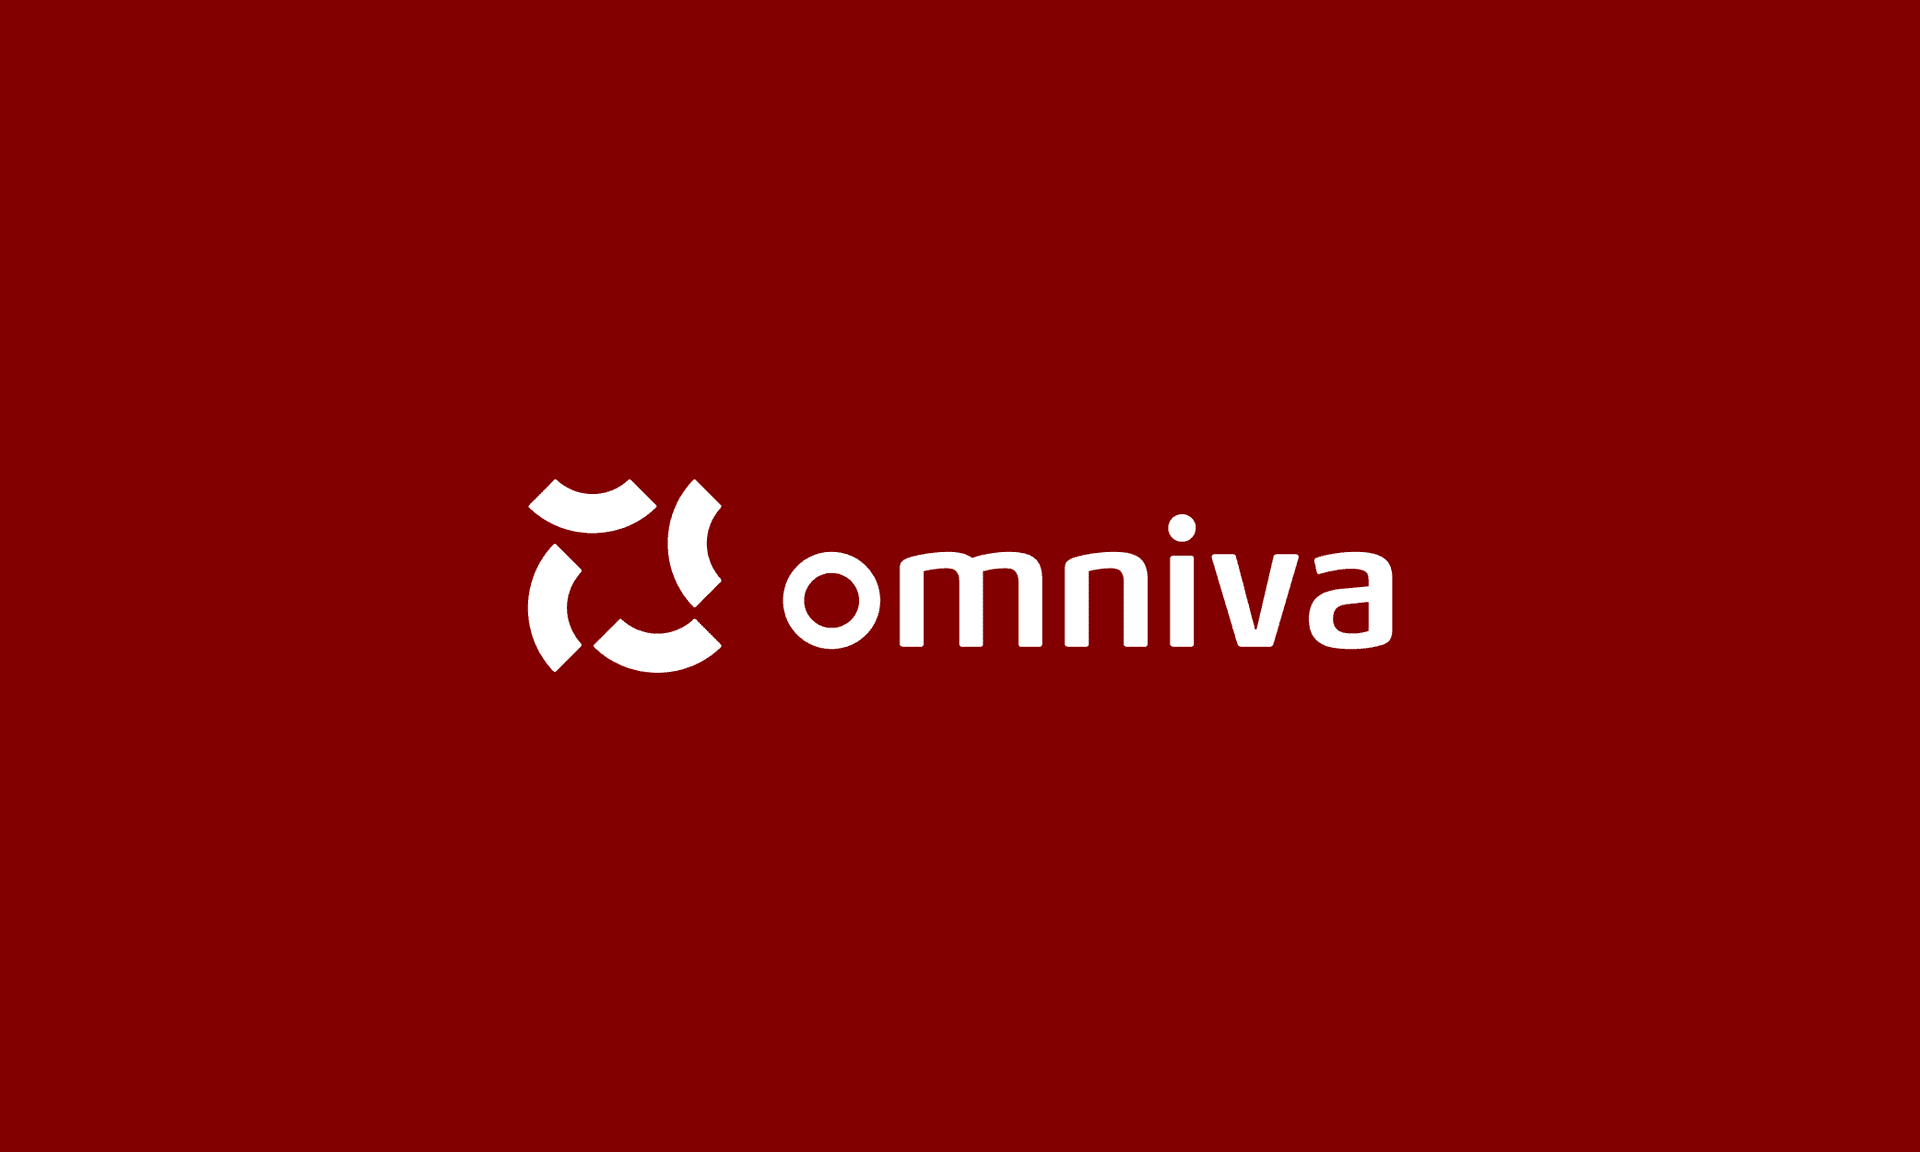 Omniva - Shopify